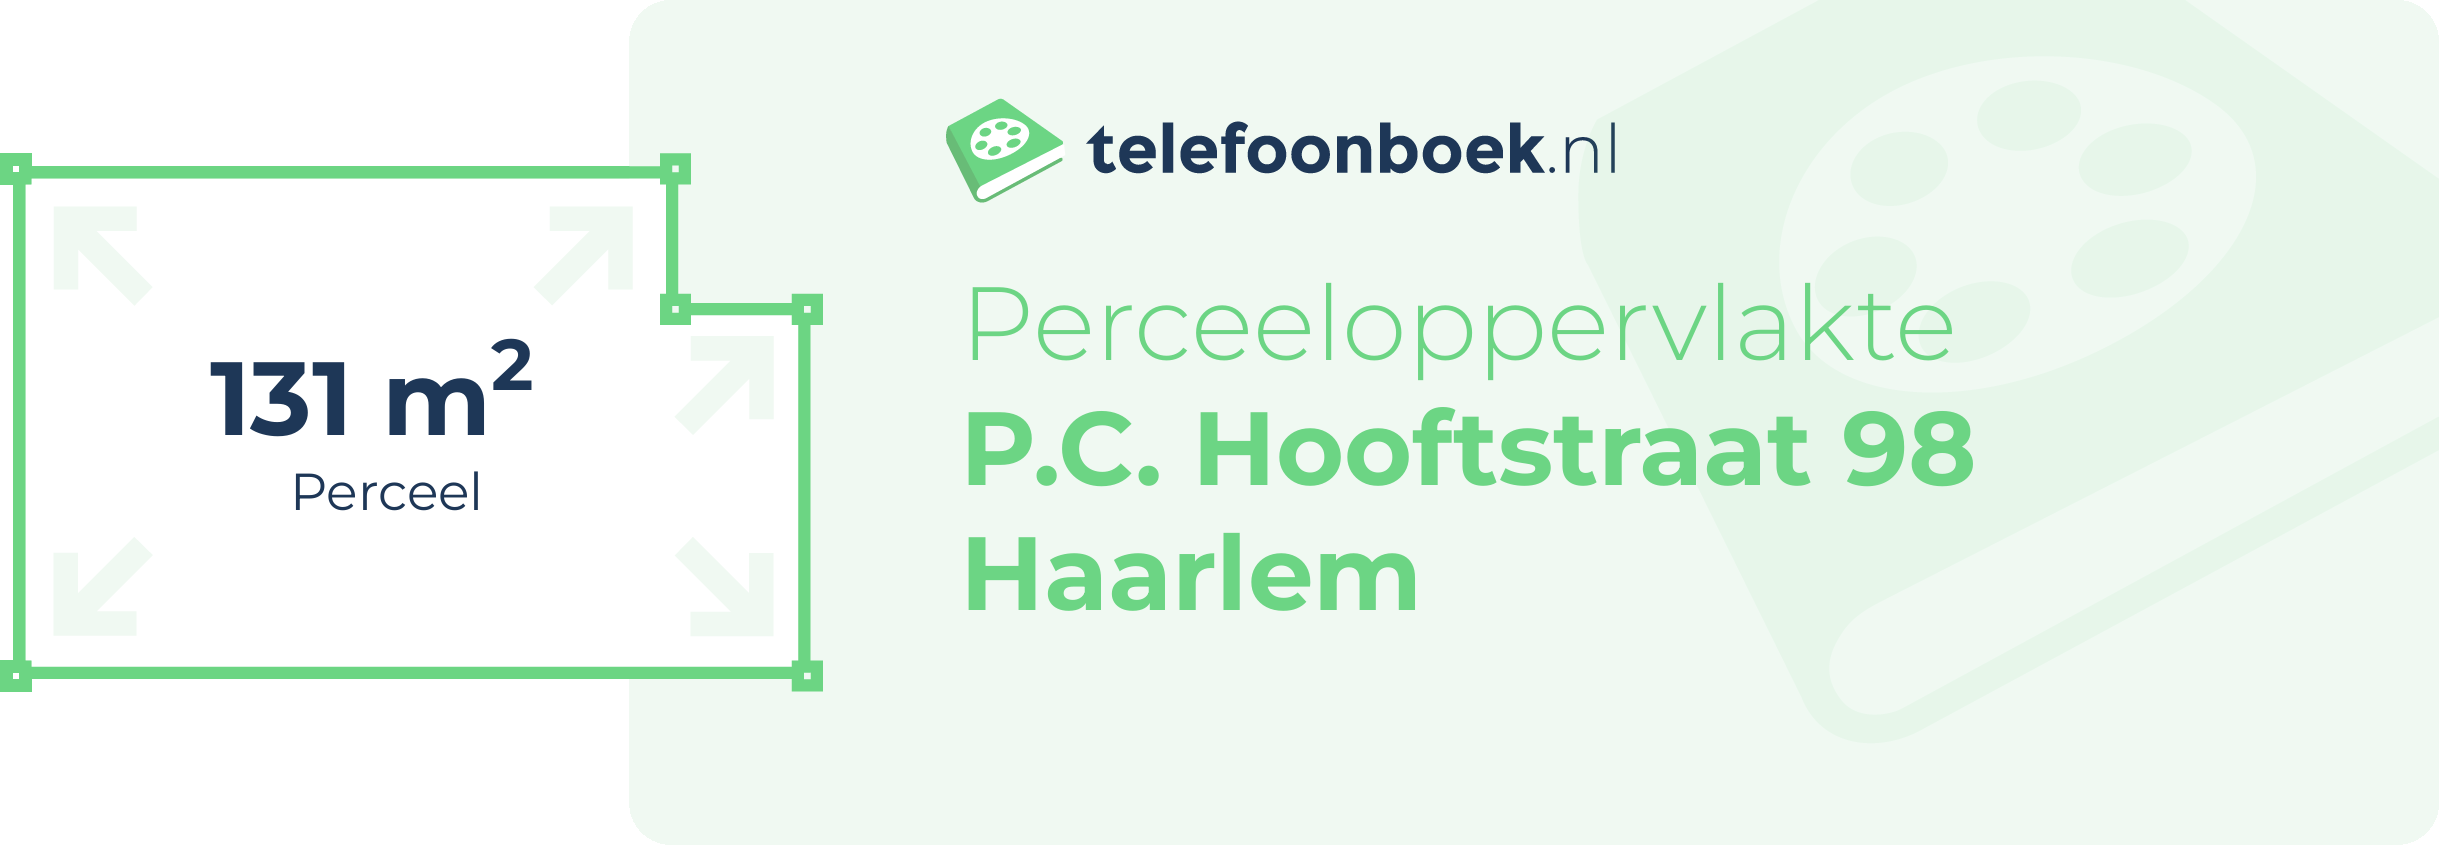 Perceeloppervlakte P.C. Hooftstraat 98 Haarlem